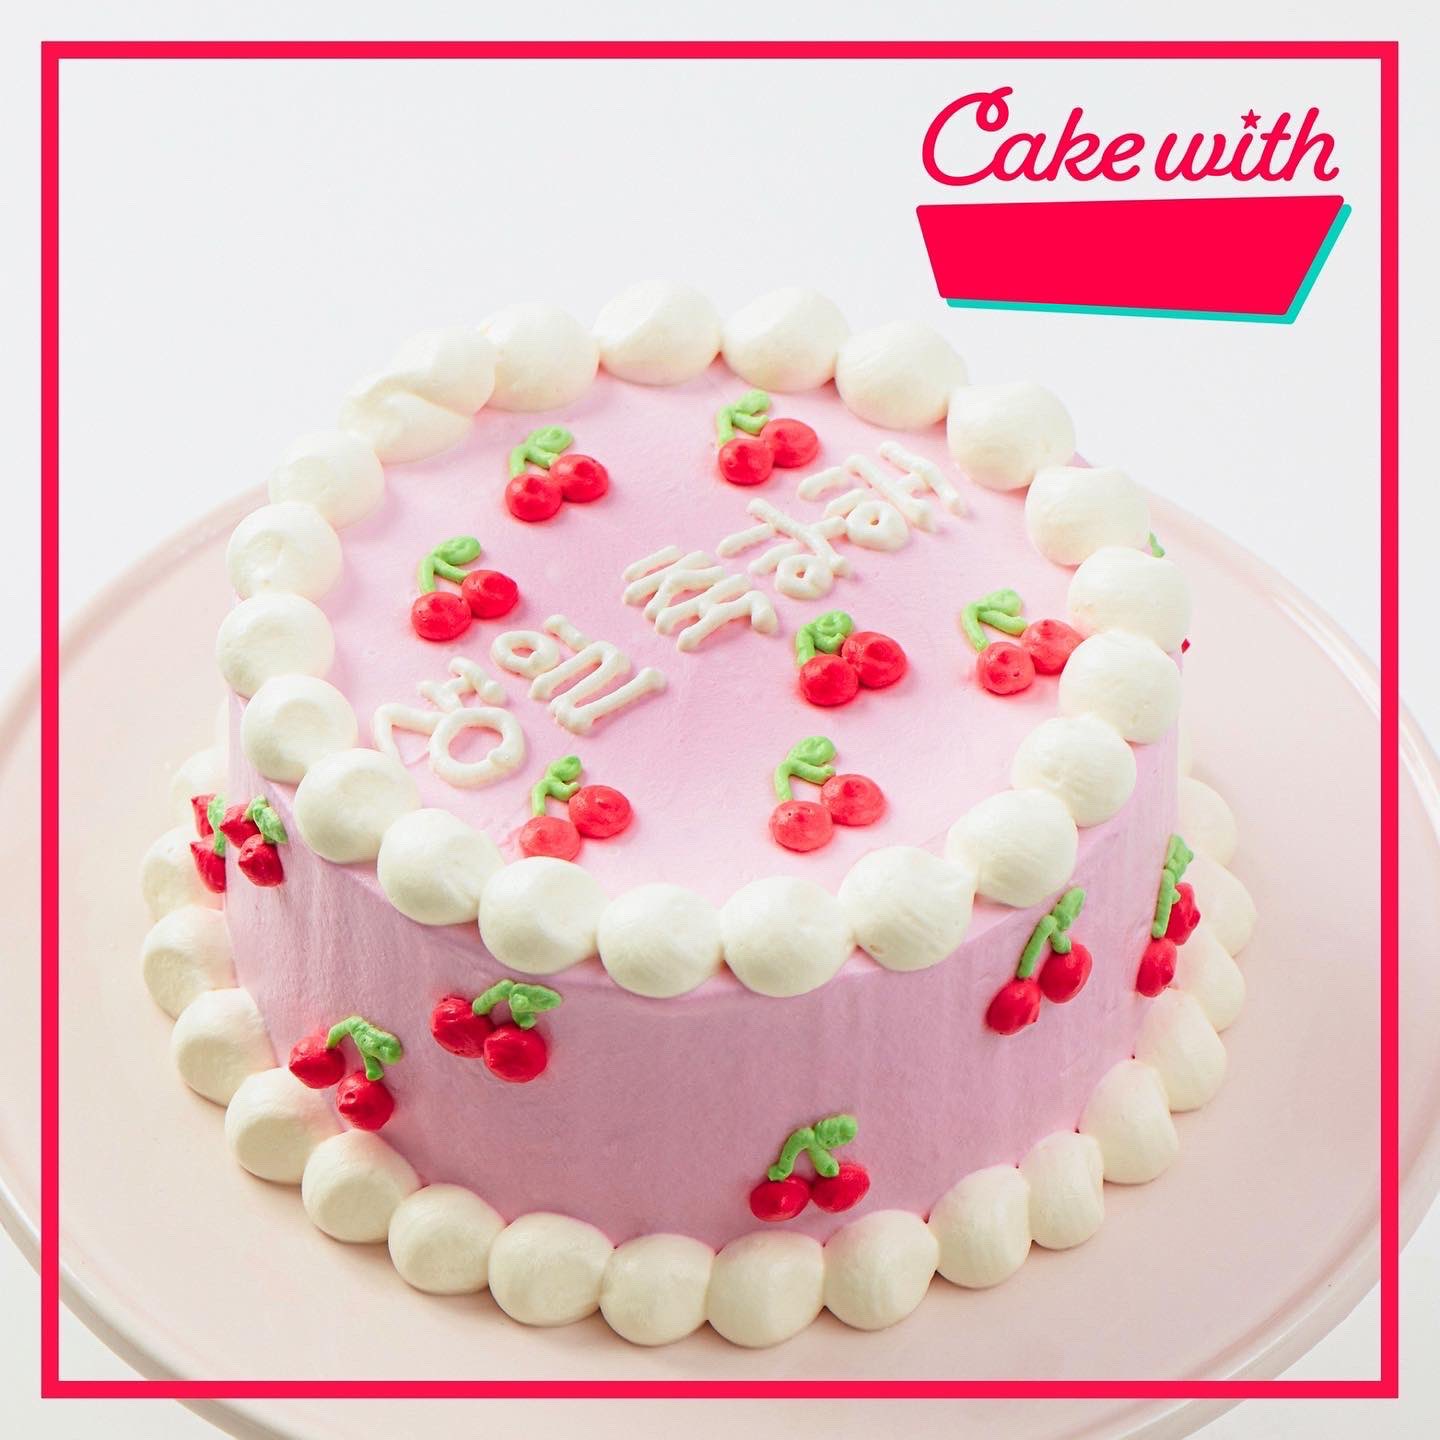 تويتر Cake With على تويتر の総柄ケーキ Cake Withのサイトでは お誕生日おめでとう の文字を英語 日本語 韓国語と選べます 推しや大切な人へ 自分へのご褒美に パティシエが心を込めて文字を綴ります T Co Lqorkn7m7t T Co Hwjjqkenv4